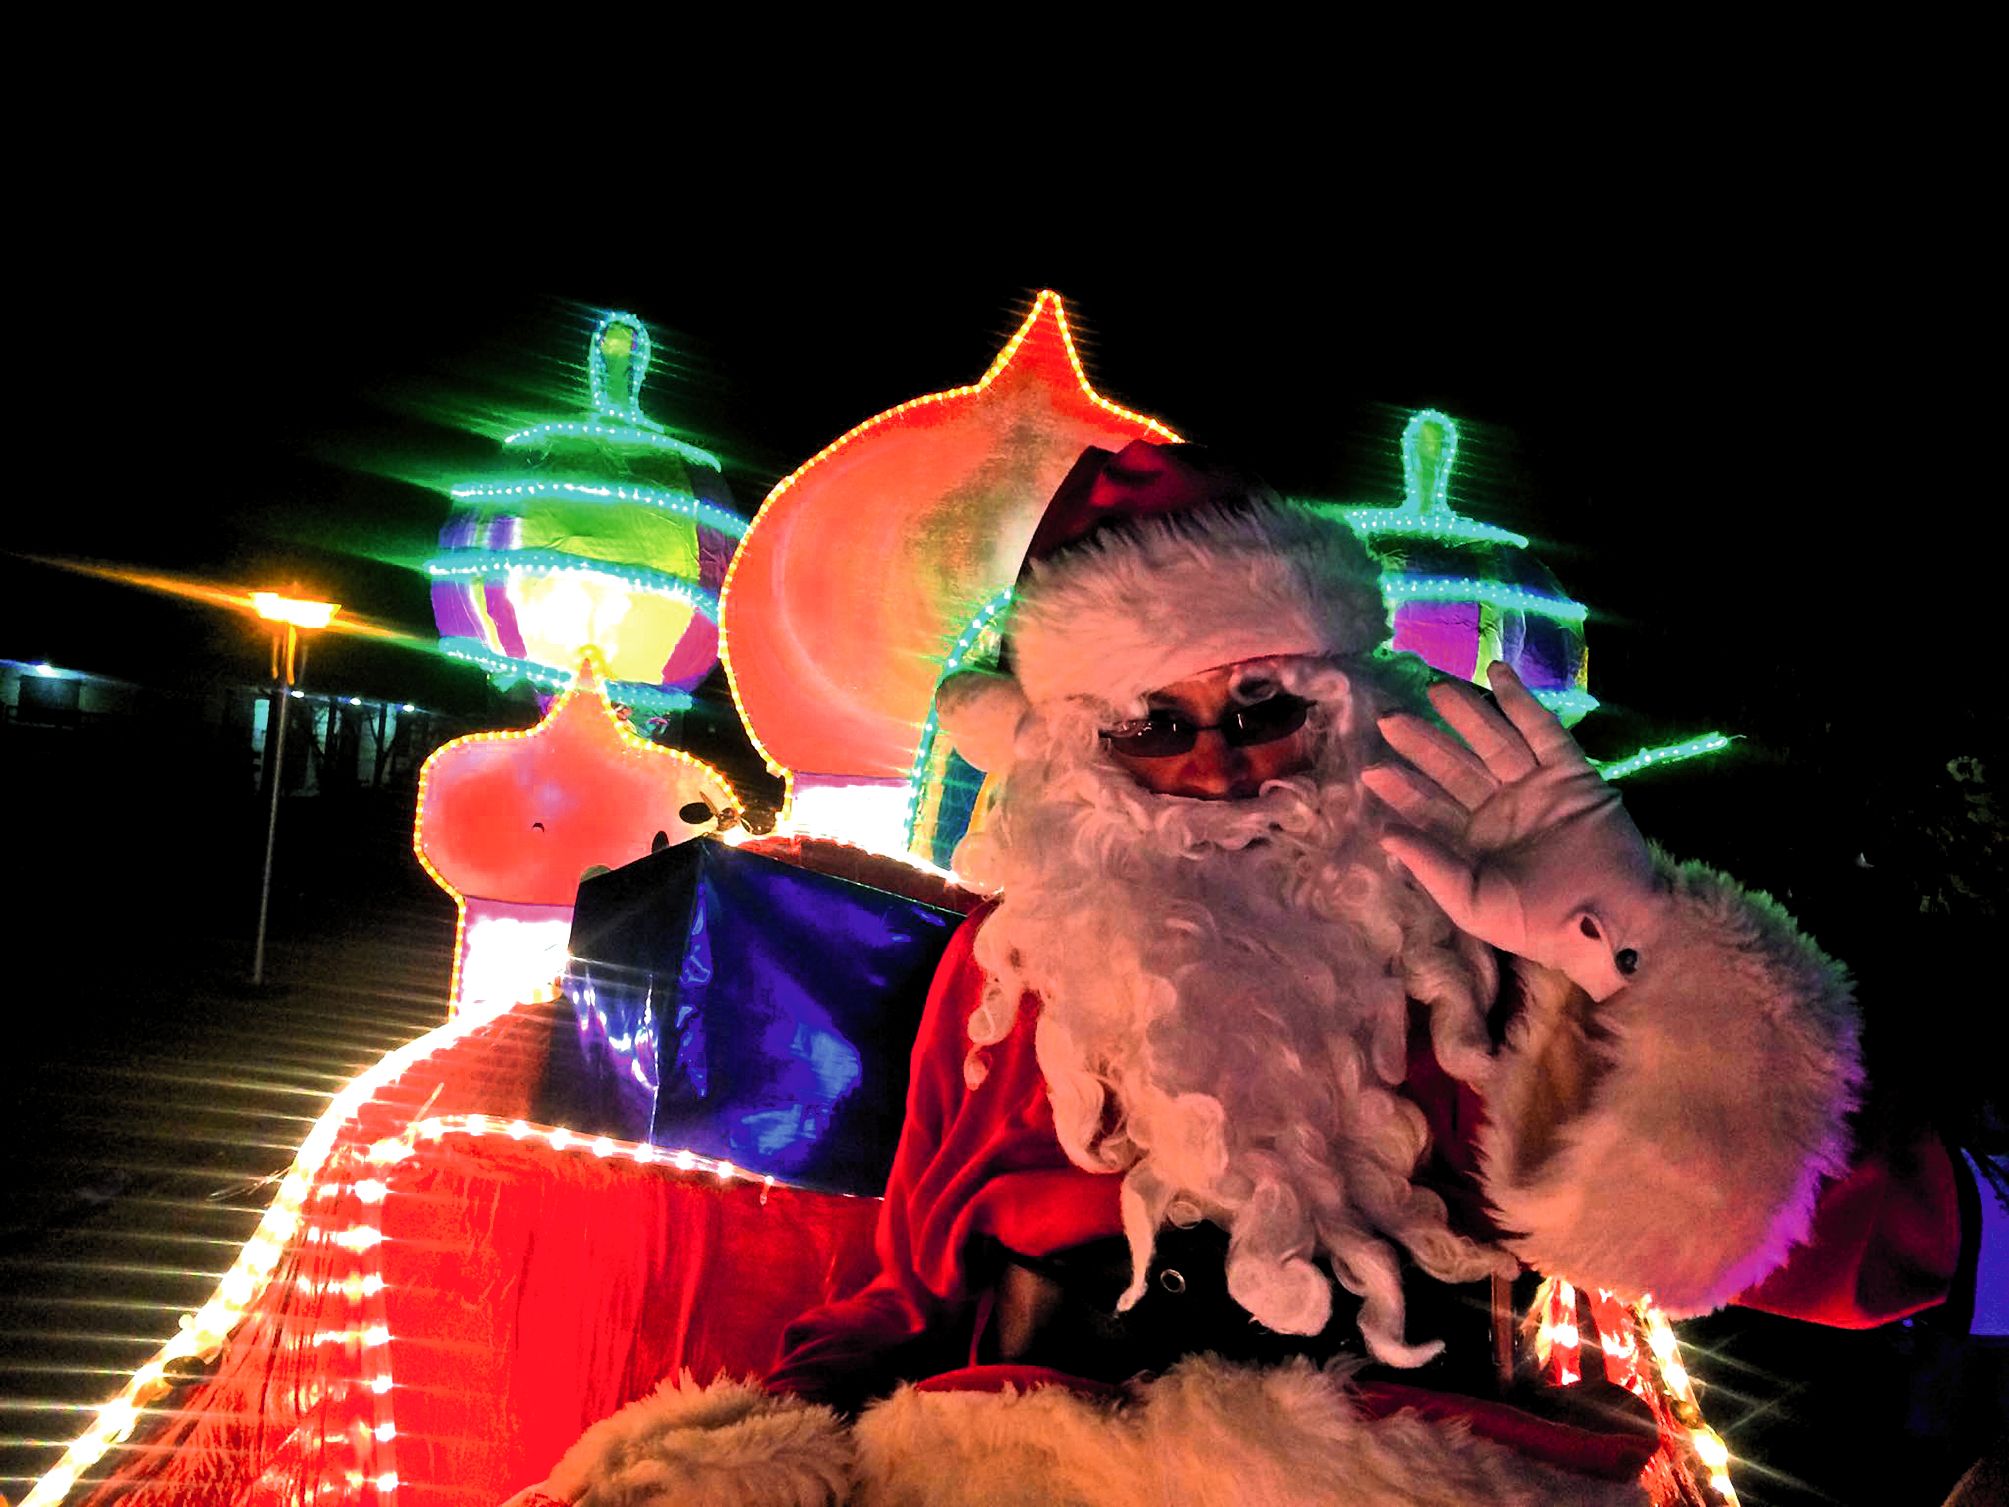 L’arrivée du père Noël sur son merveilleux char des Mille et une nuits.